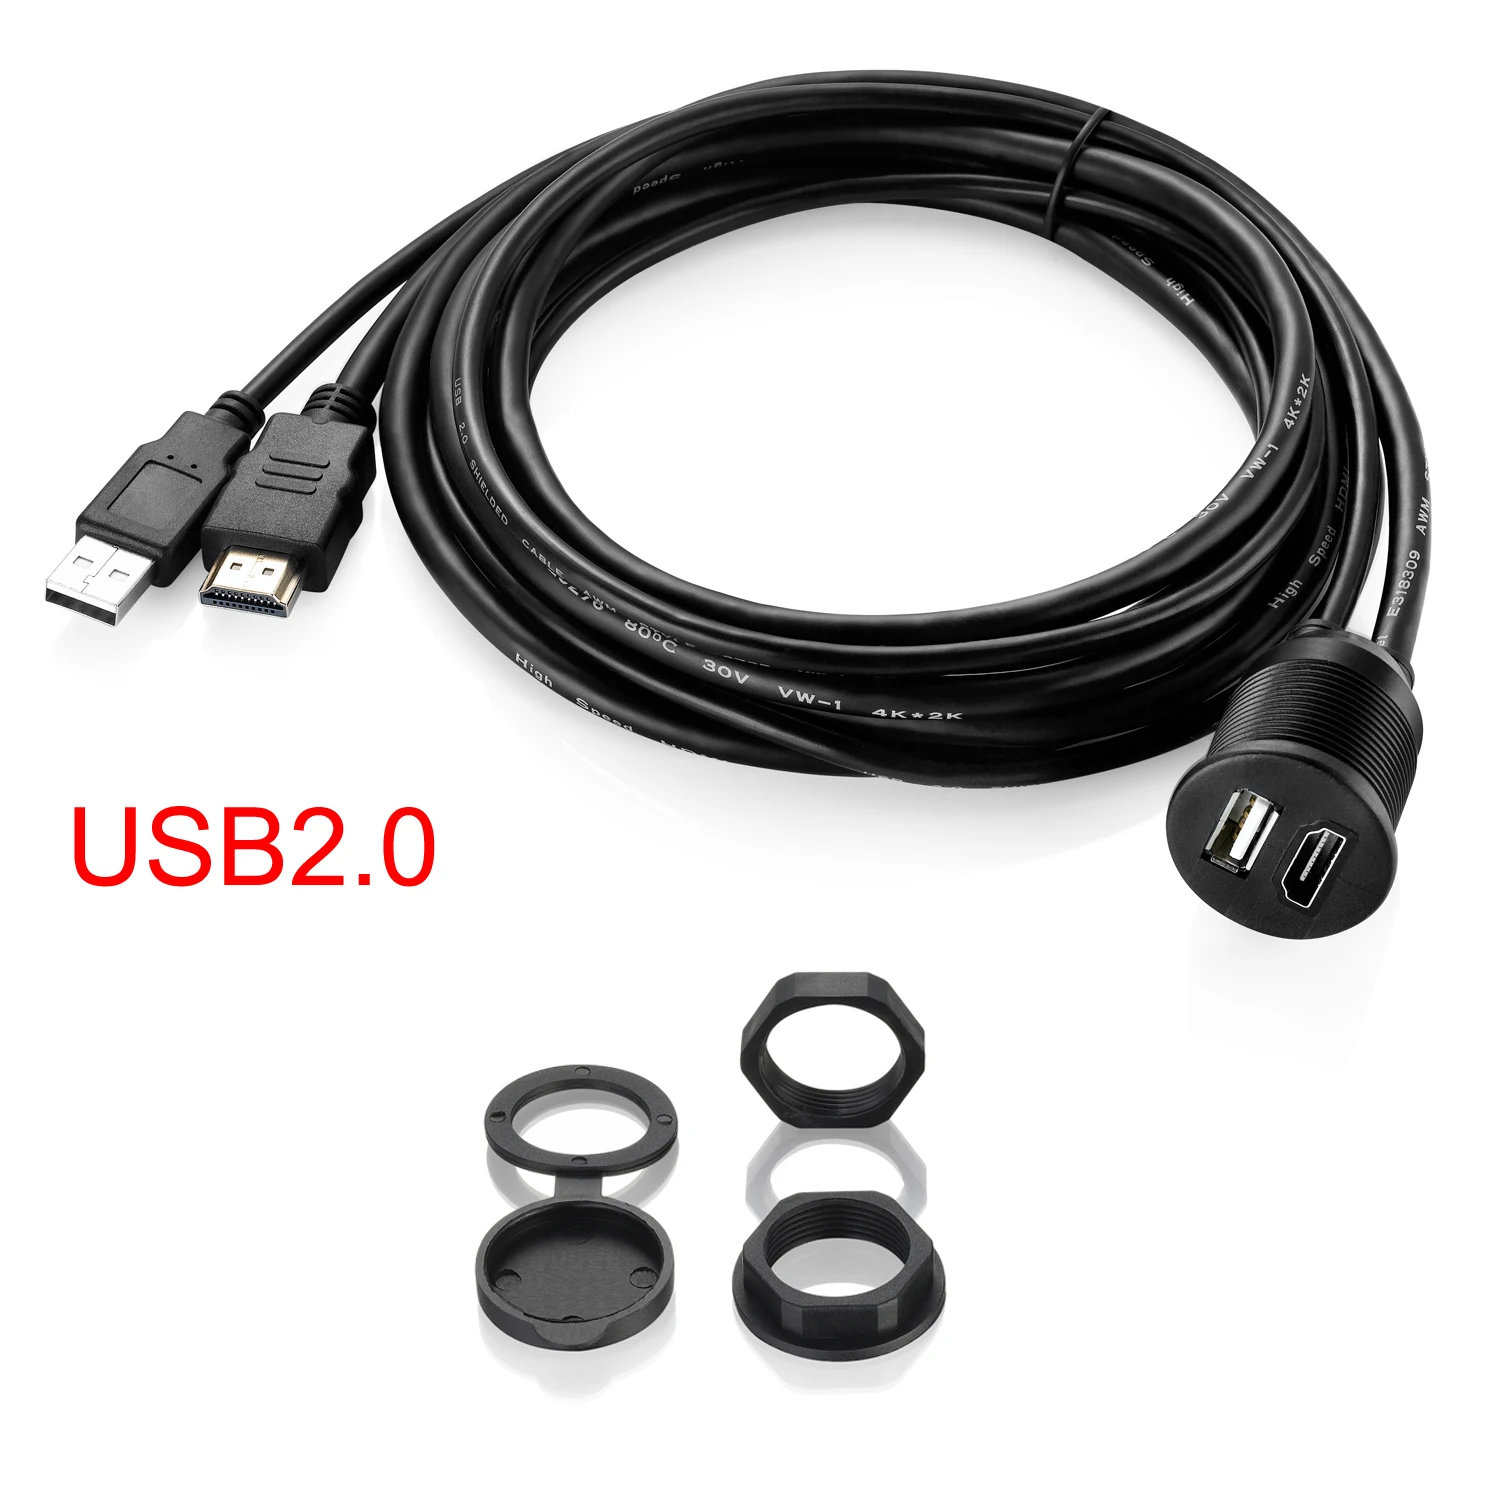 Bochara-Cabo de Extensão Compatível com HDMI, USB 3.0, USB 2.0 +, macho para fêmea, V2.0, 4K x 2K @ 60Hz, Flush Mount Painel Painel para carro